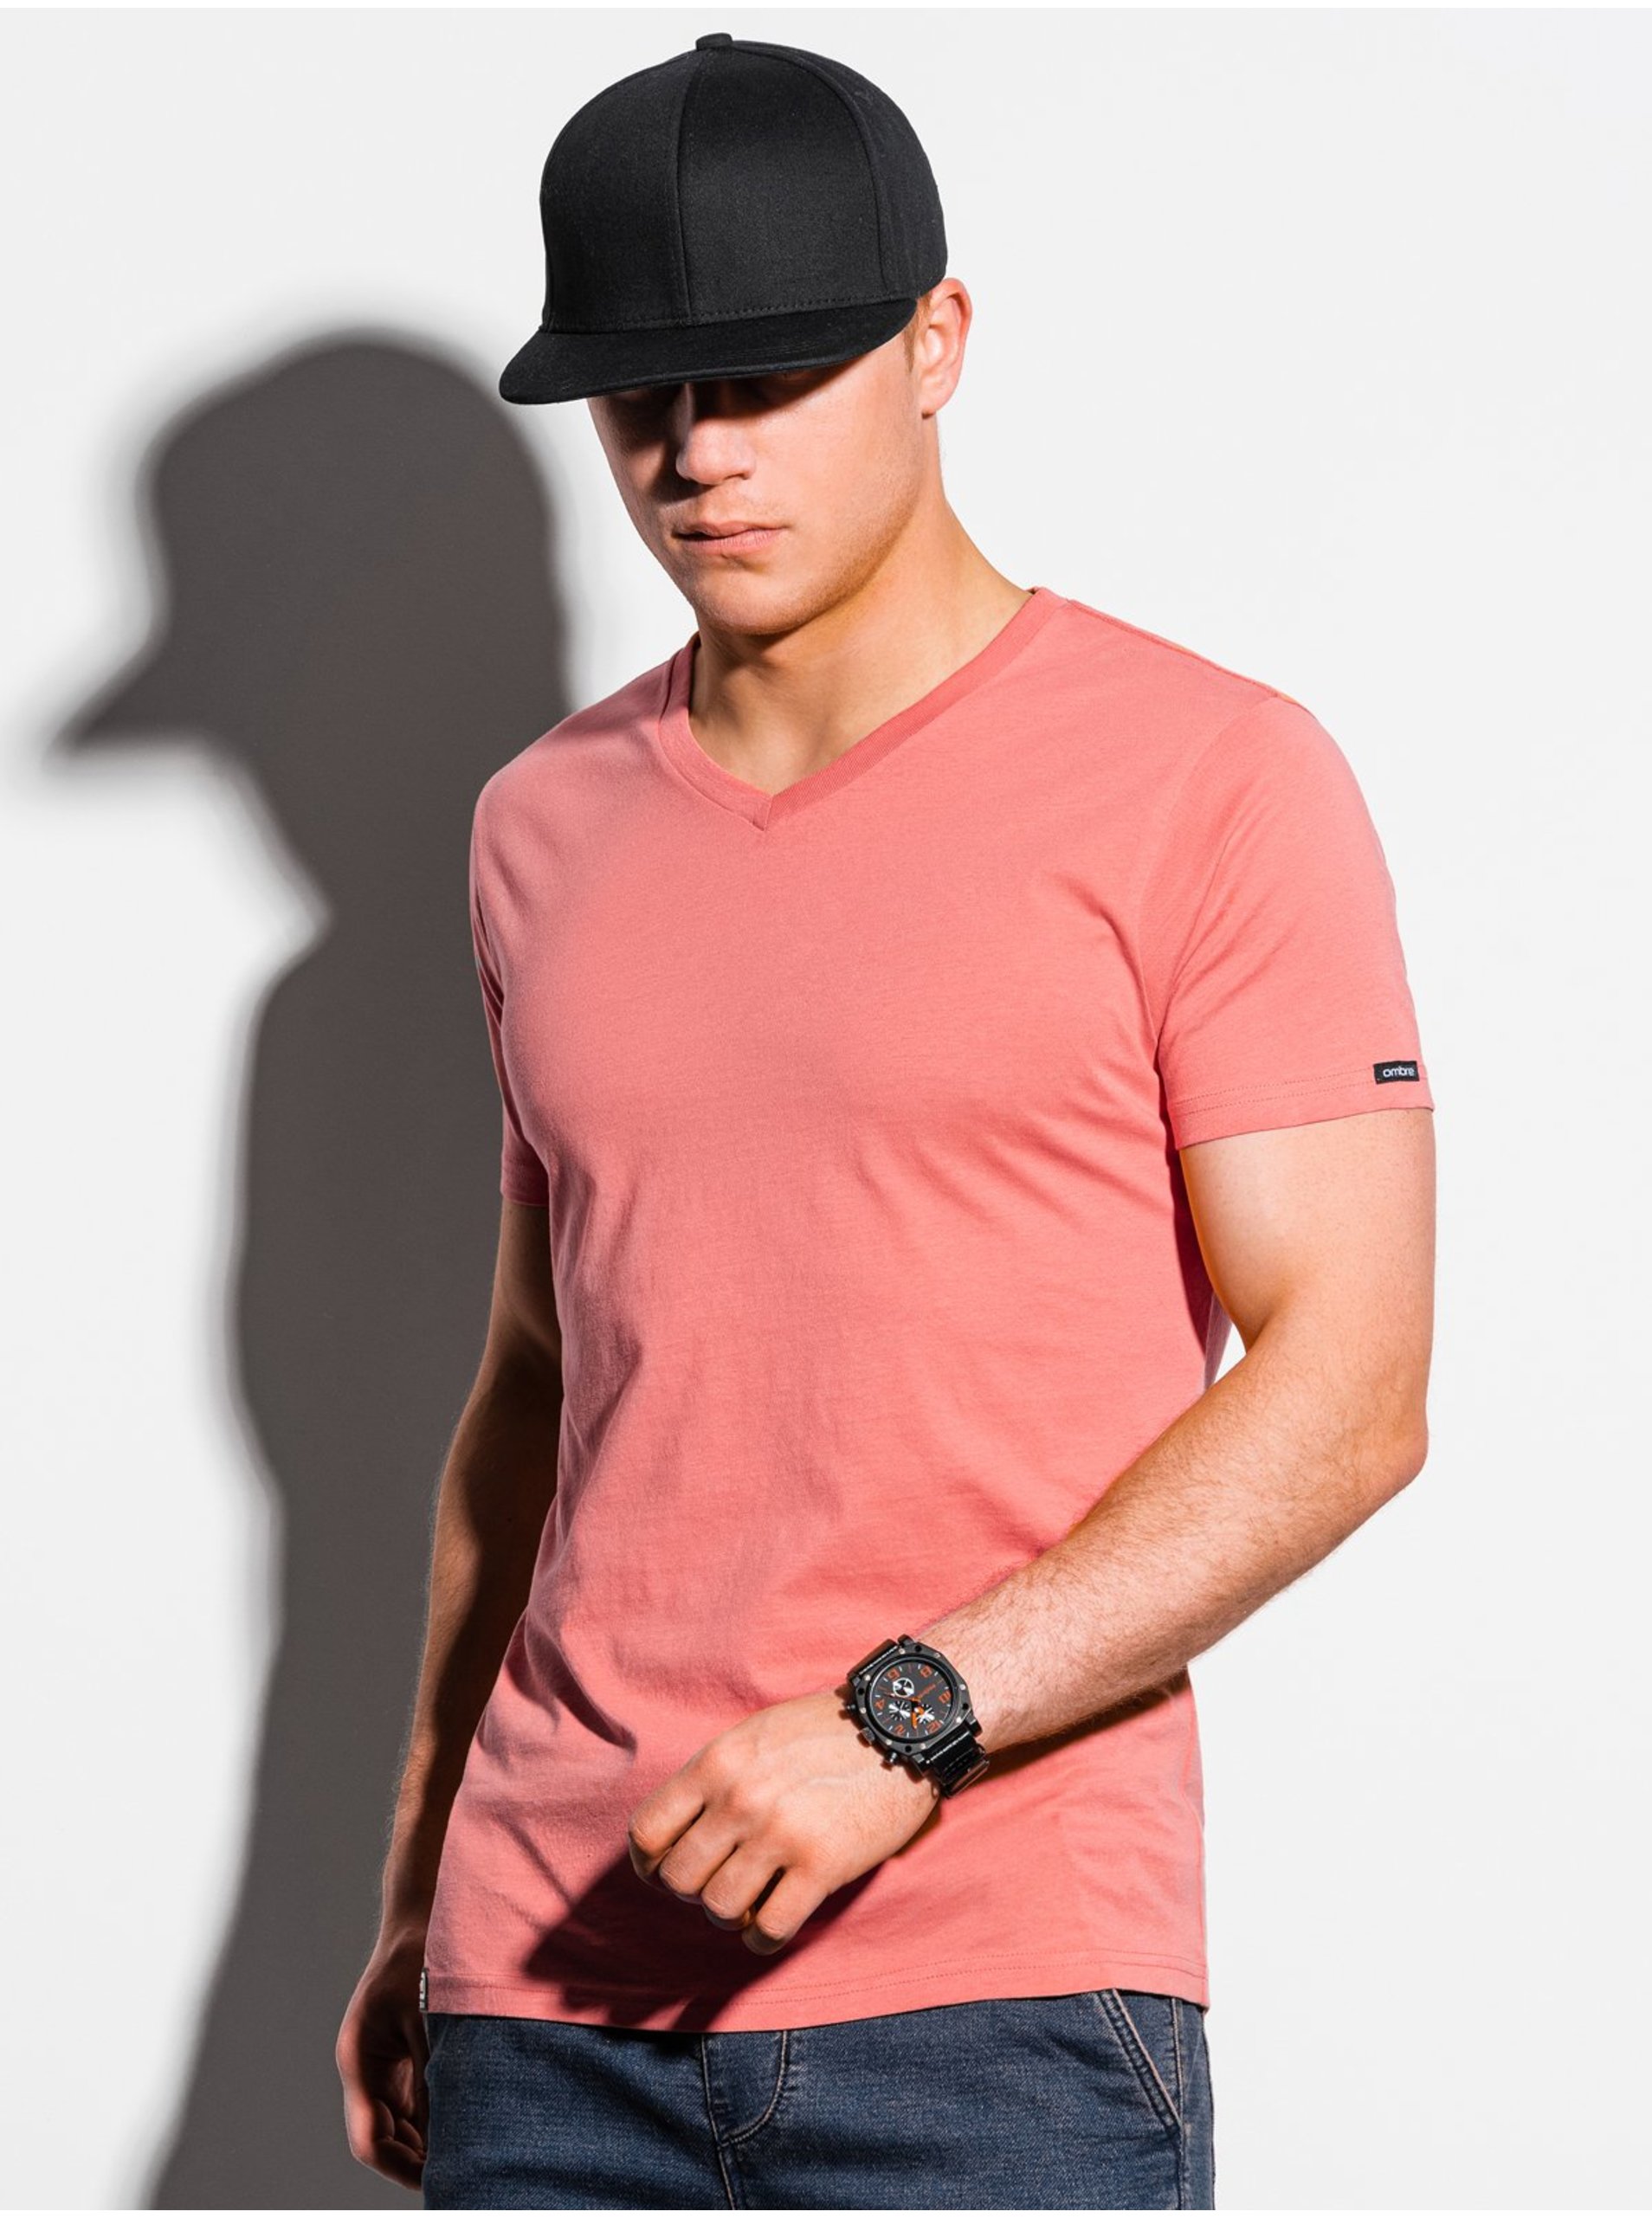 E-shop Koralové pánske tričko bez potlače Ombre Clothing S1369 basic basic